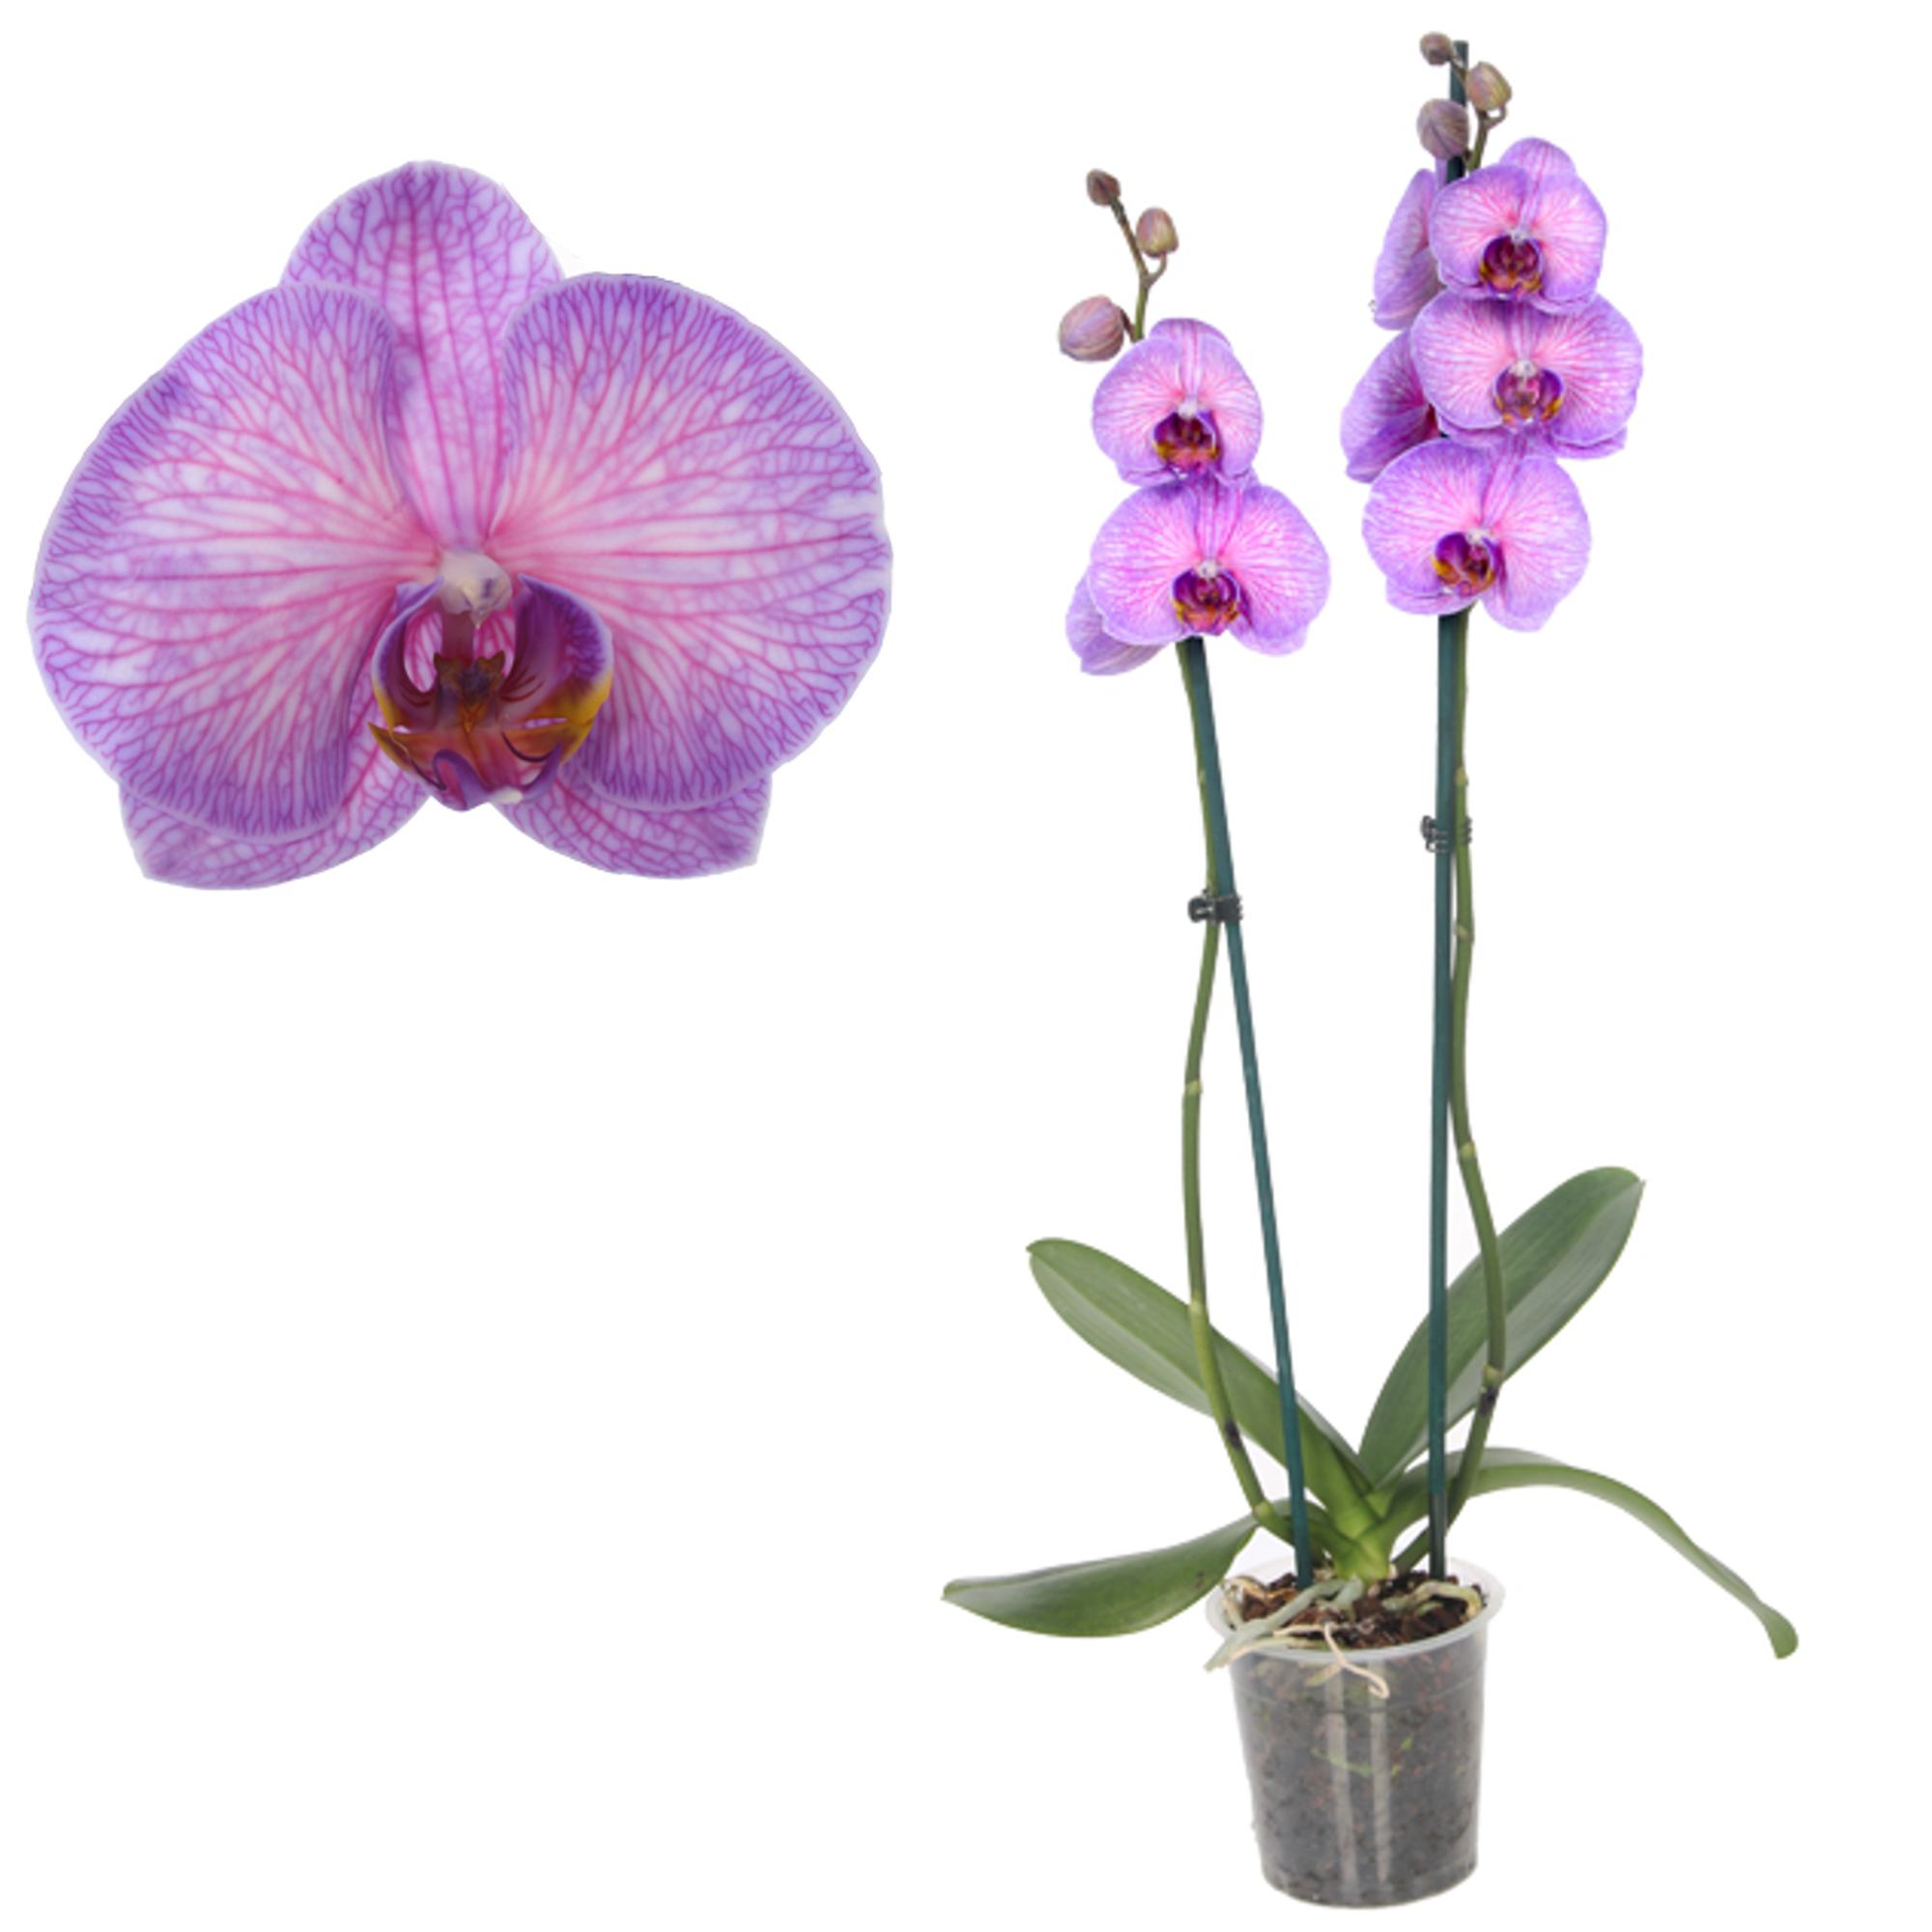 Schmetterlingsorchidee 'Royal Purple Heart' 2 Rispen pink 12 cm Topf + product picture